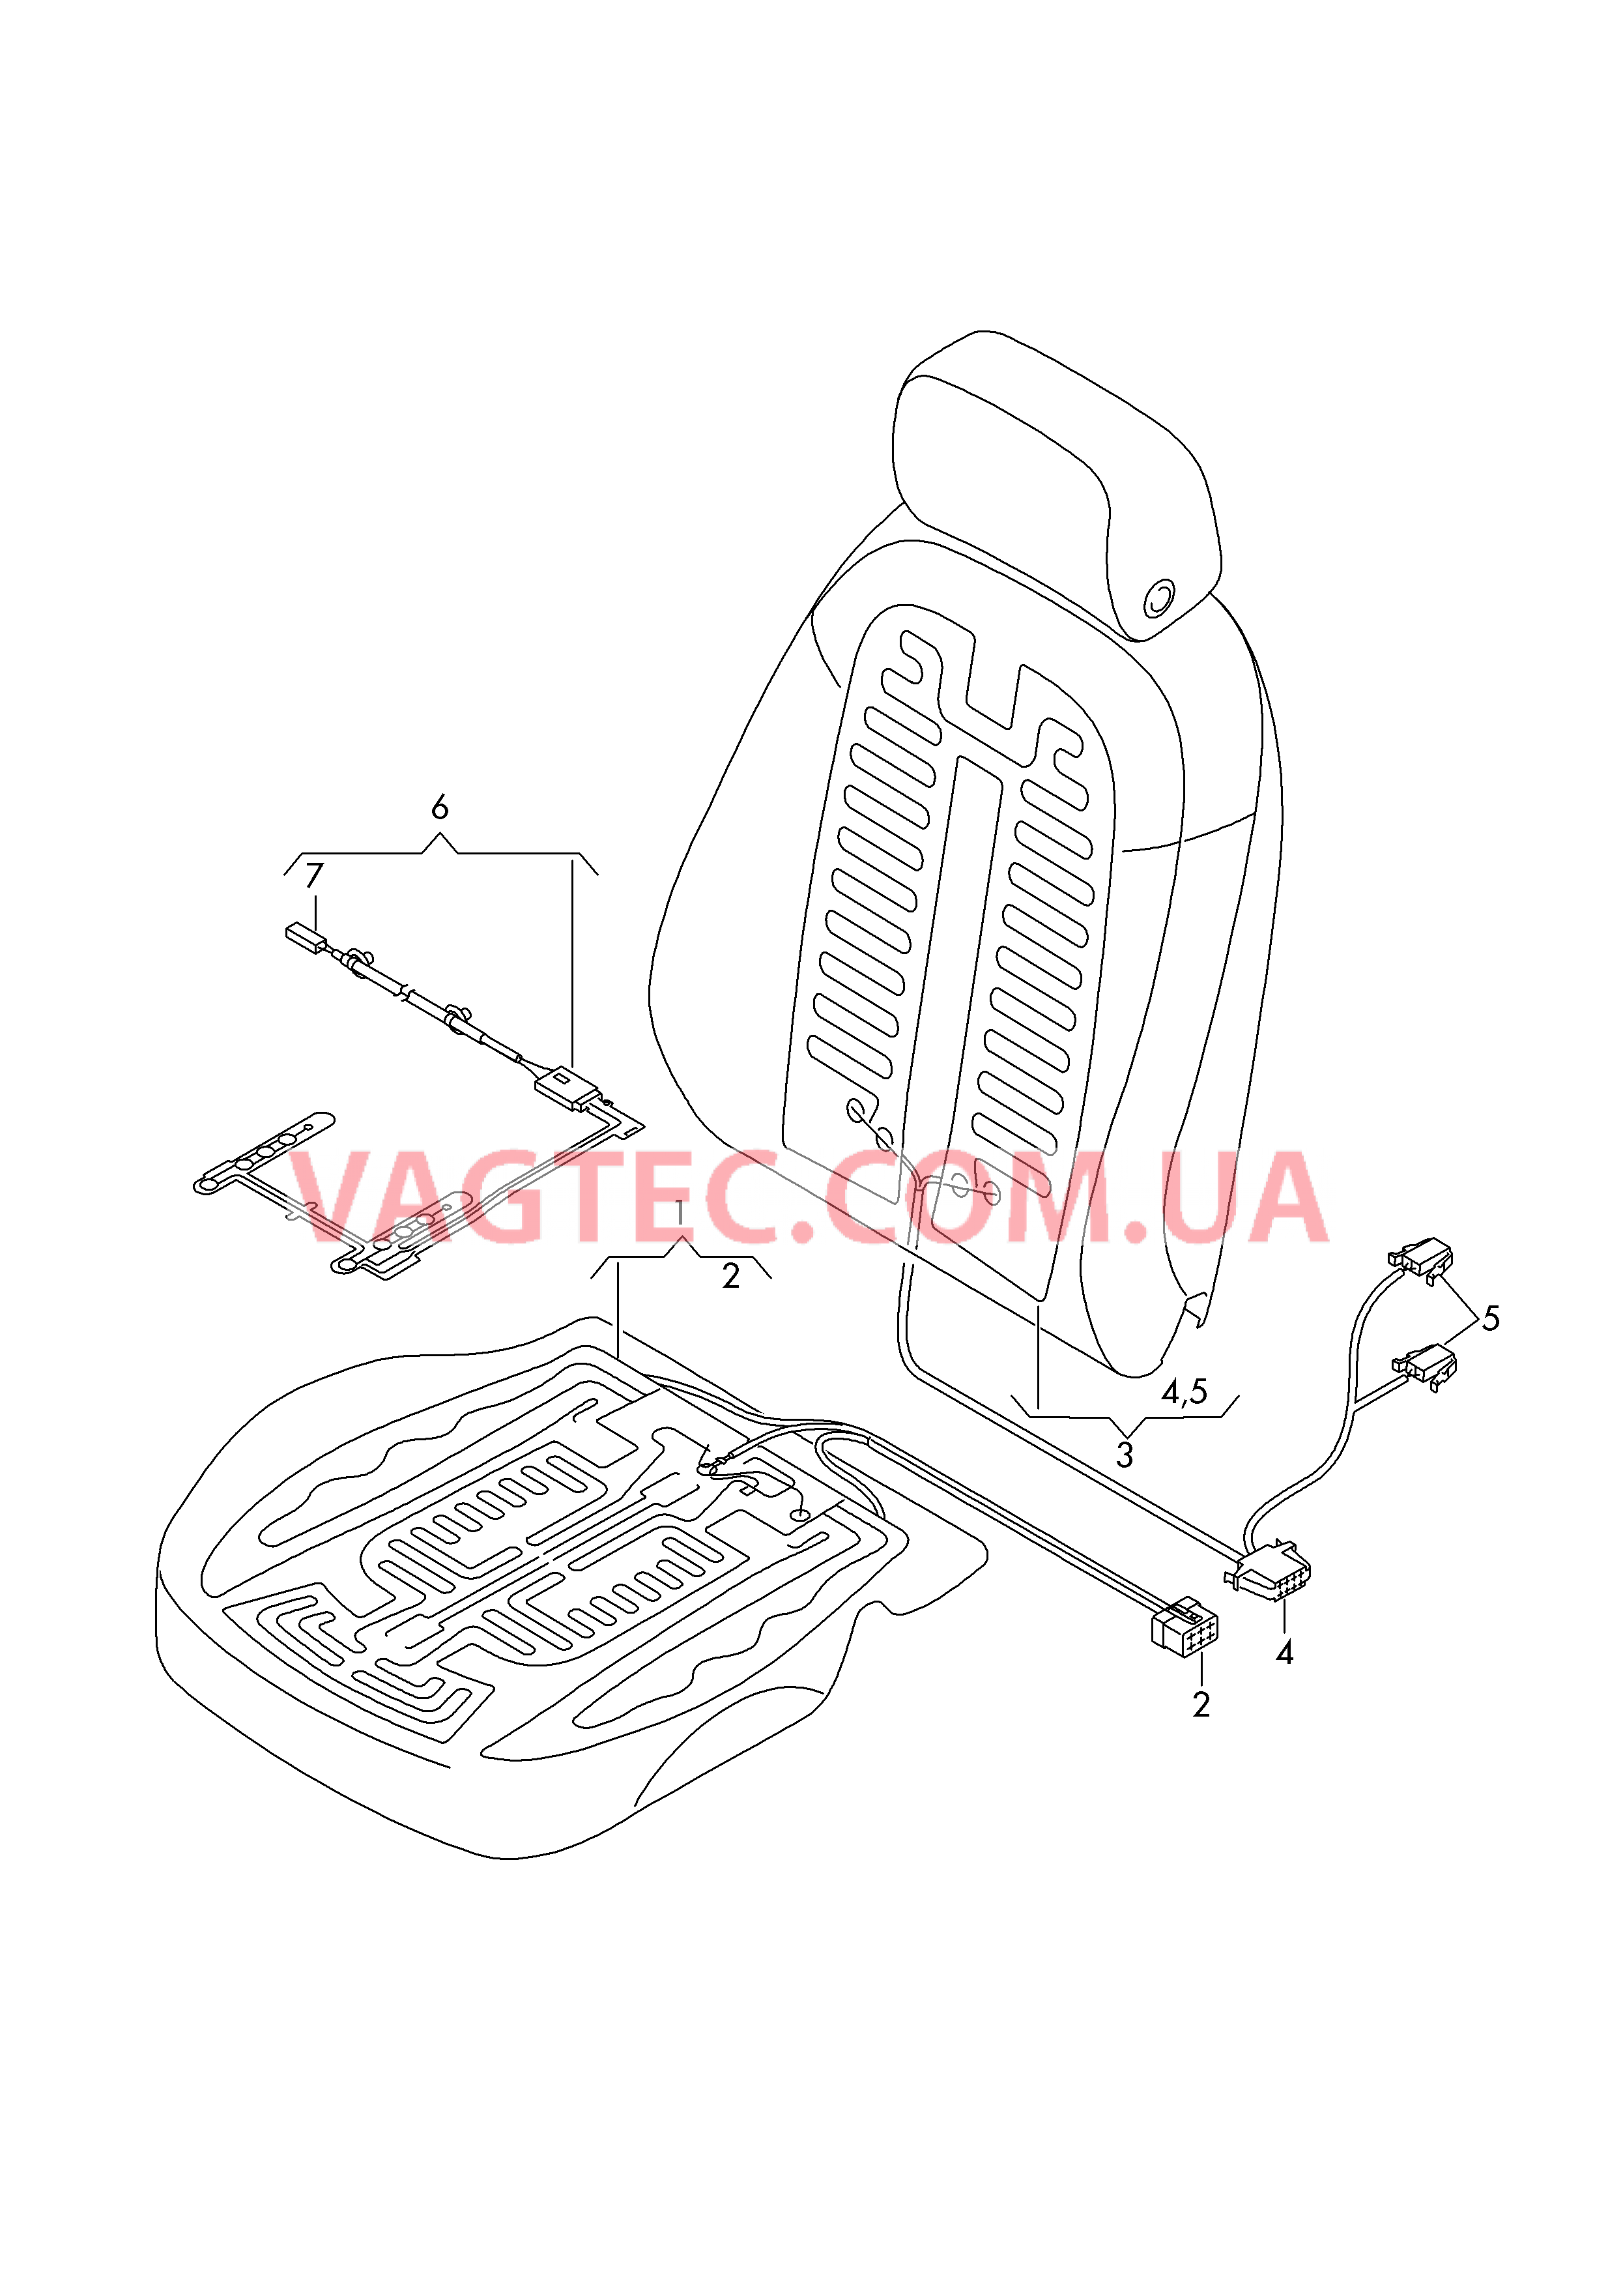 Нагревательный элемент спинки и подушки сиденья  Вставка распознавания занятости сиденья  для AUDI A6 2019